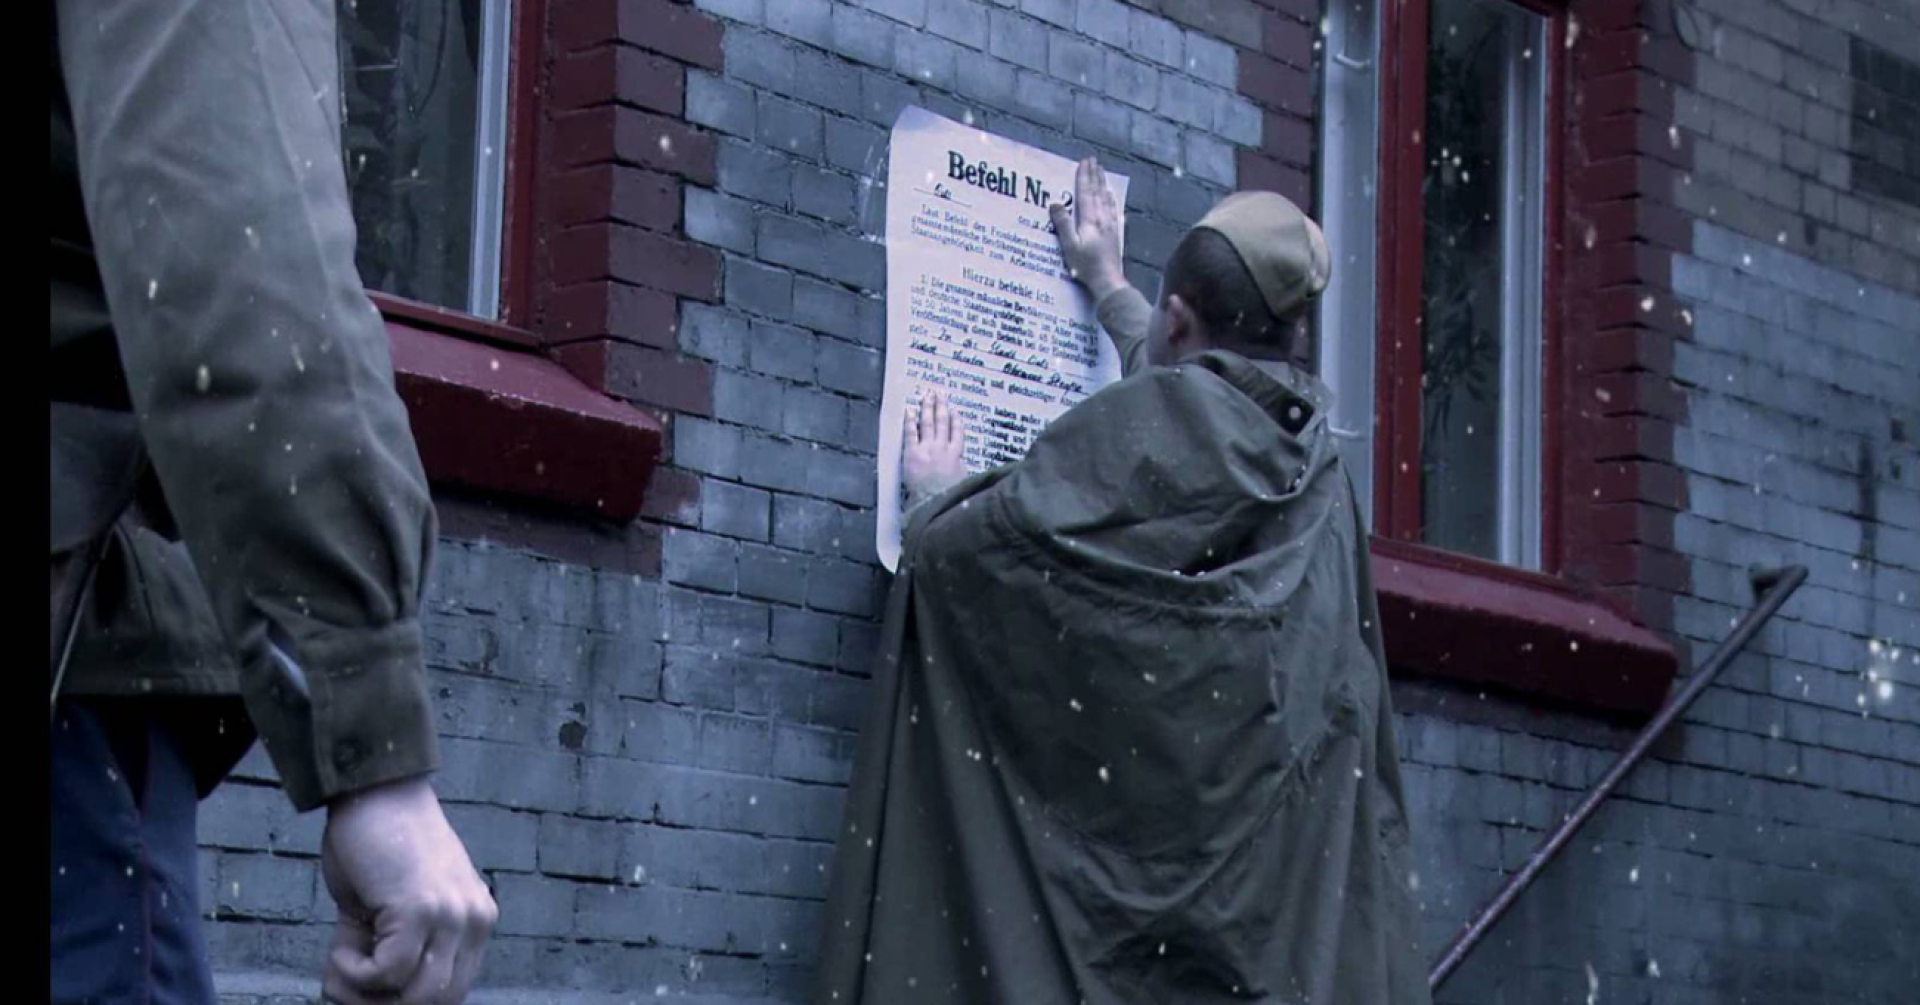 Kadr z filmu, młody chłopak zawiesza ogłoszenie o deportacji na ścianie budynku.